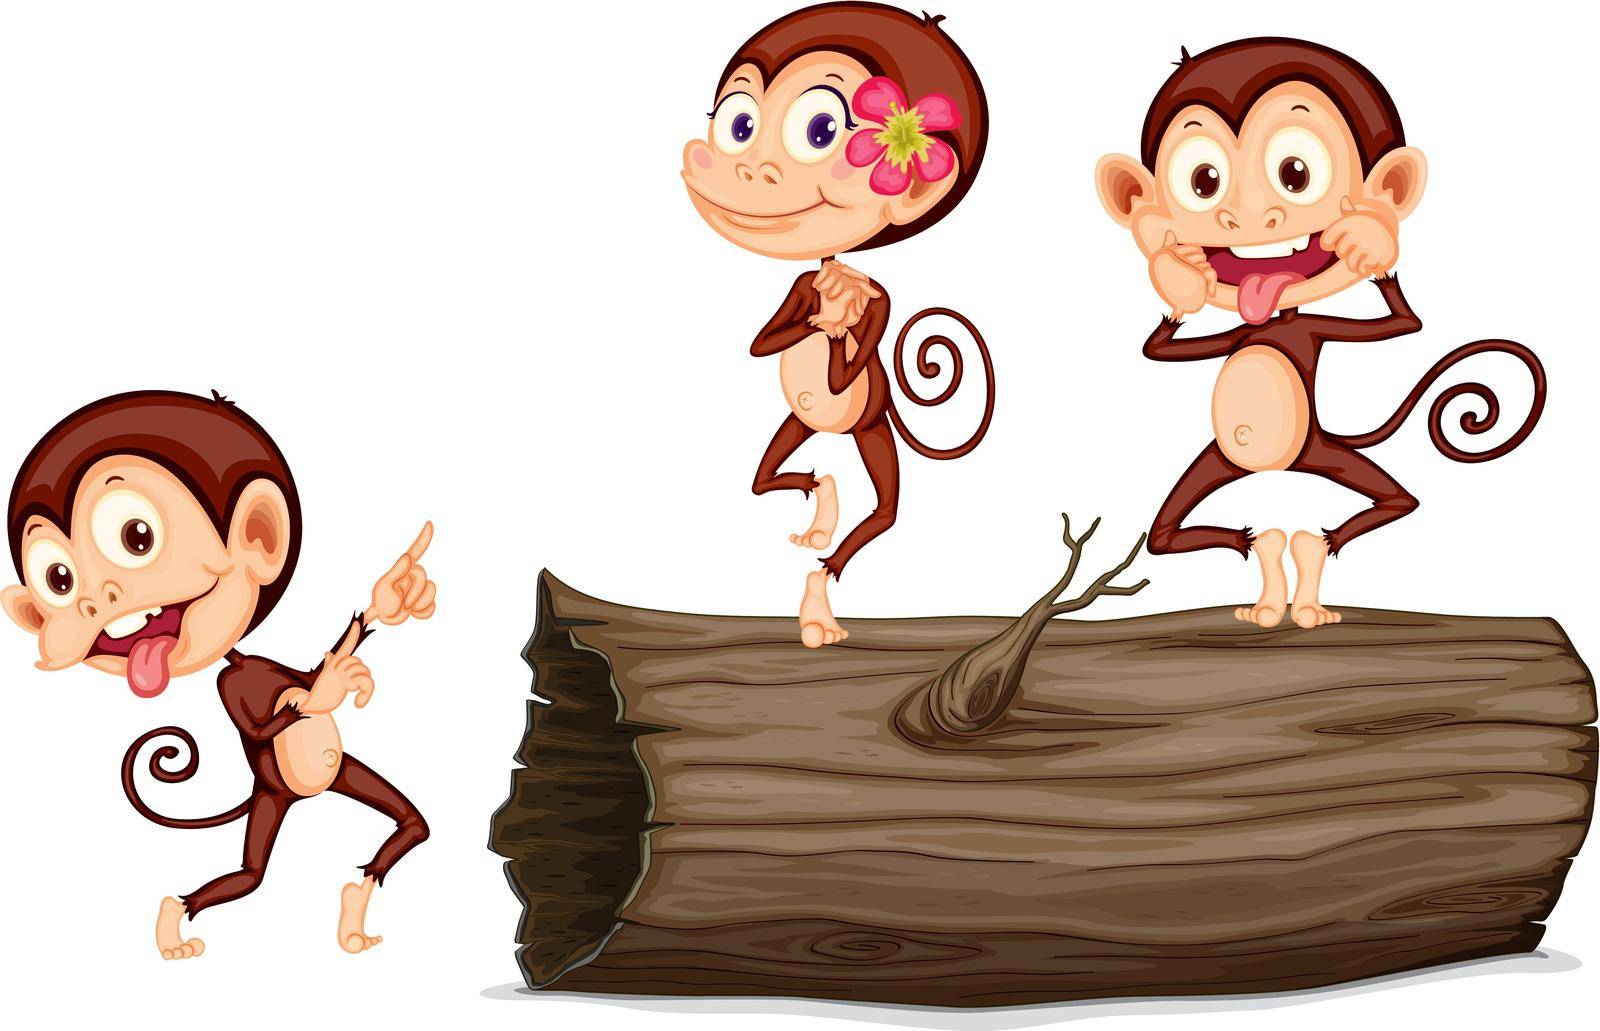 Illustration of cartoon monkey